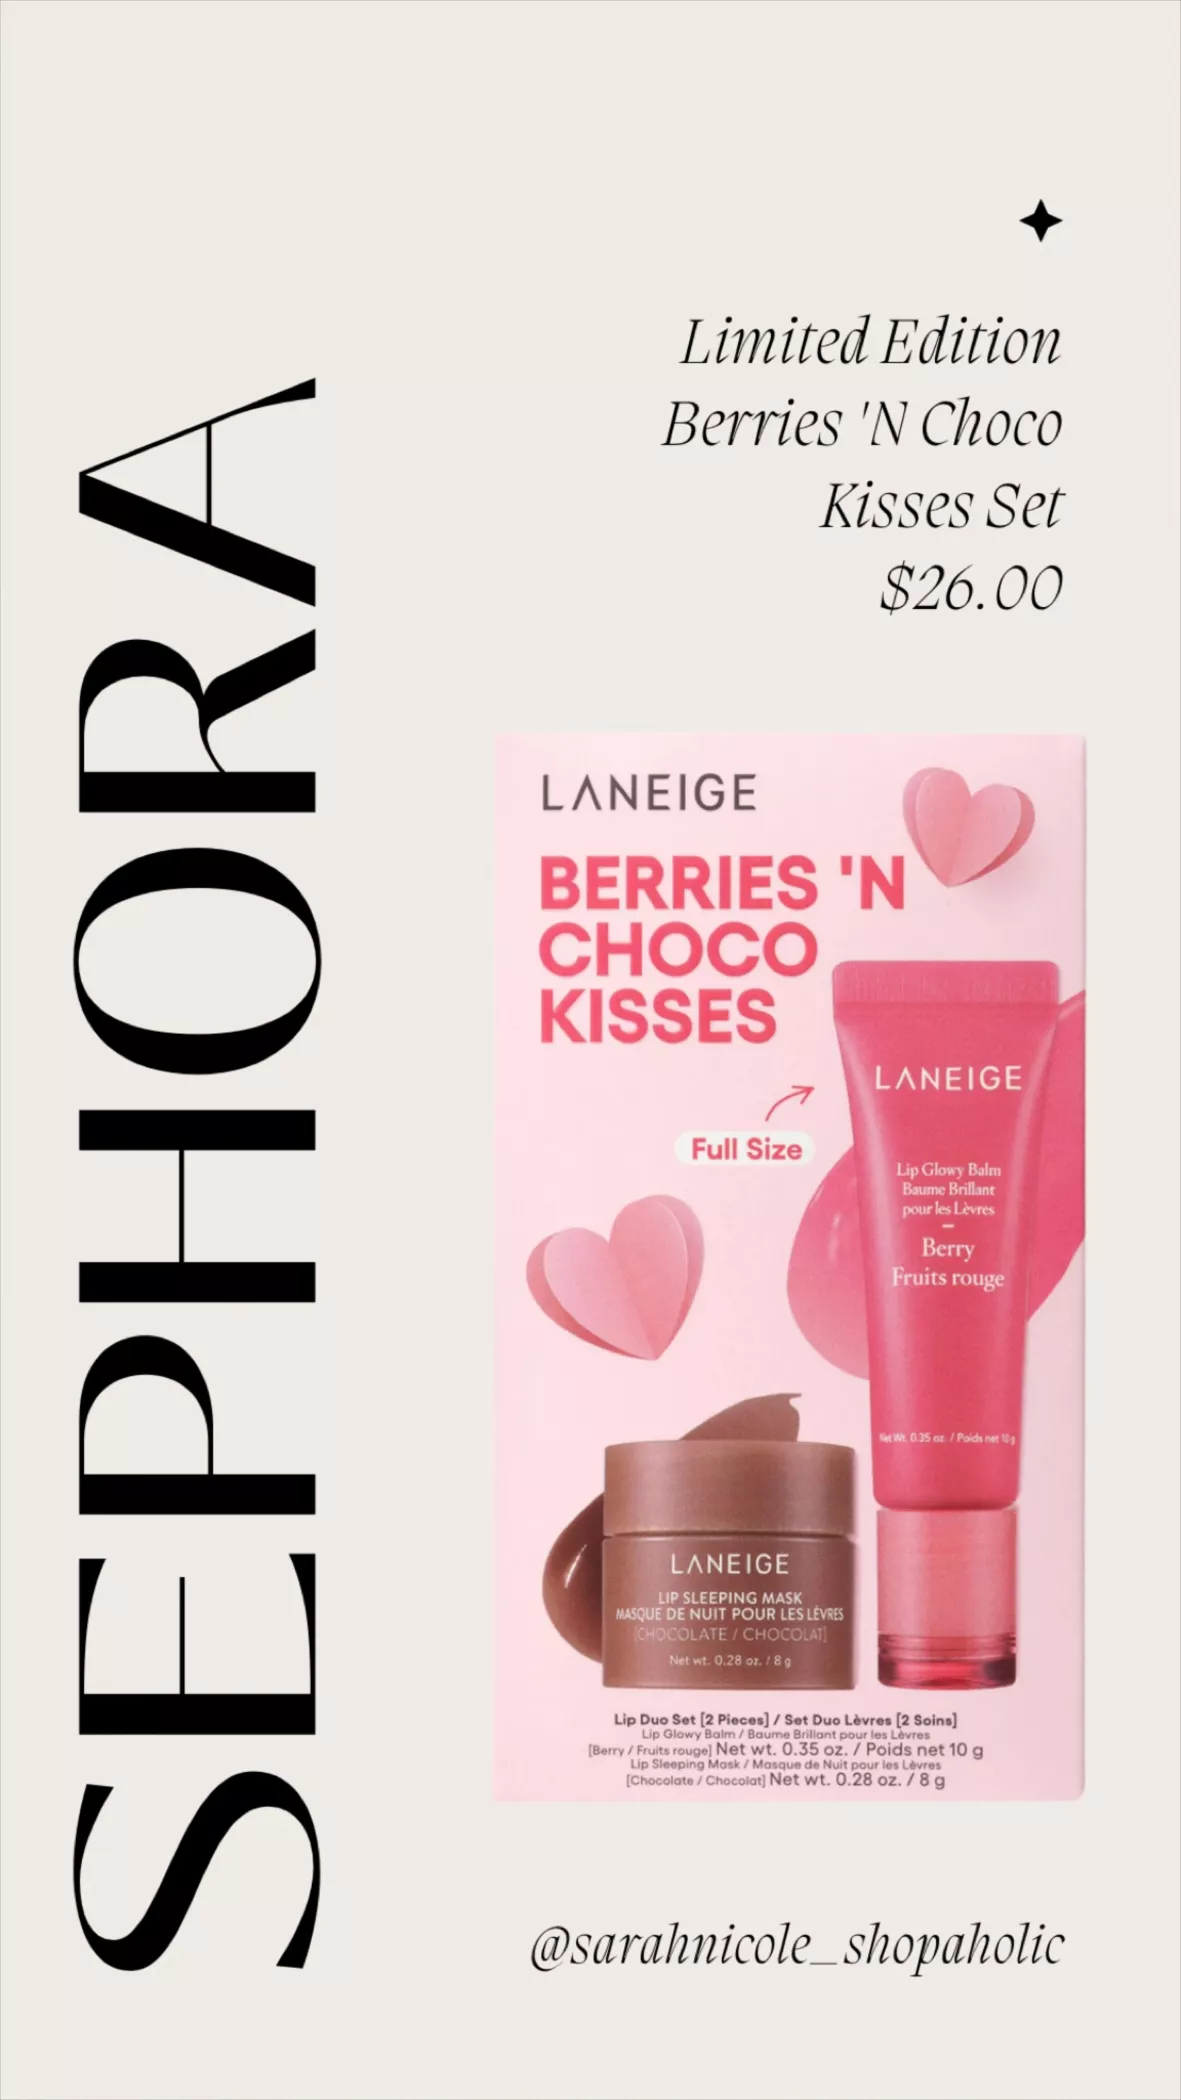 Berries 'N Choco Kisses Set curated on LTK